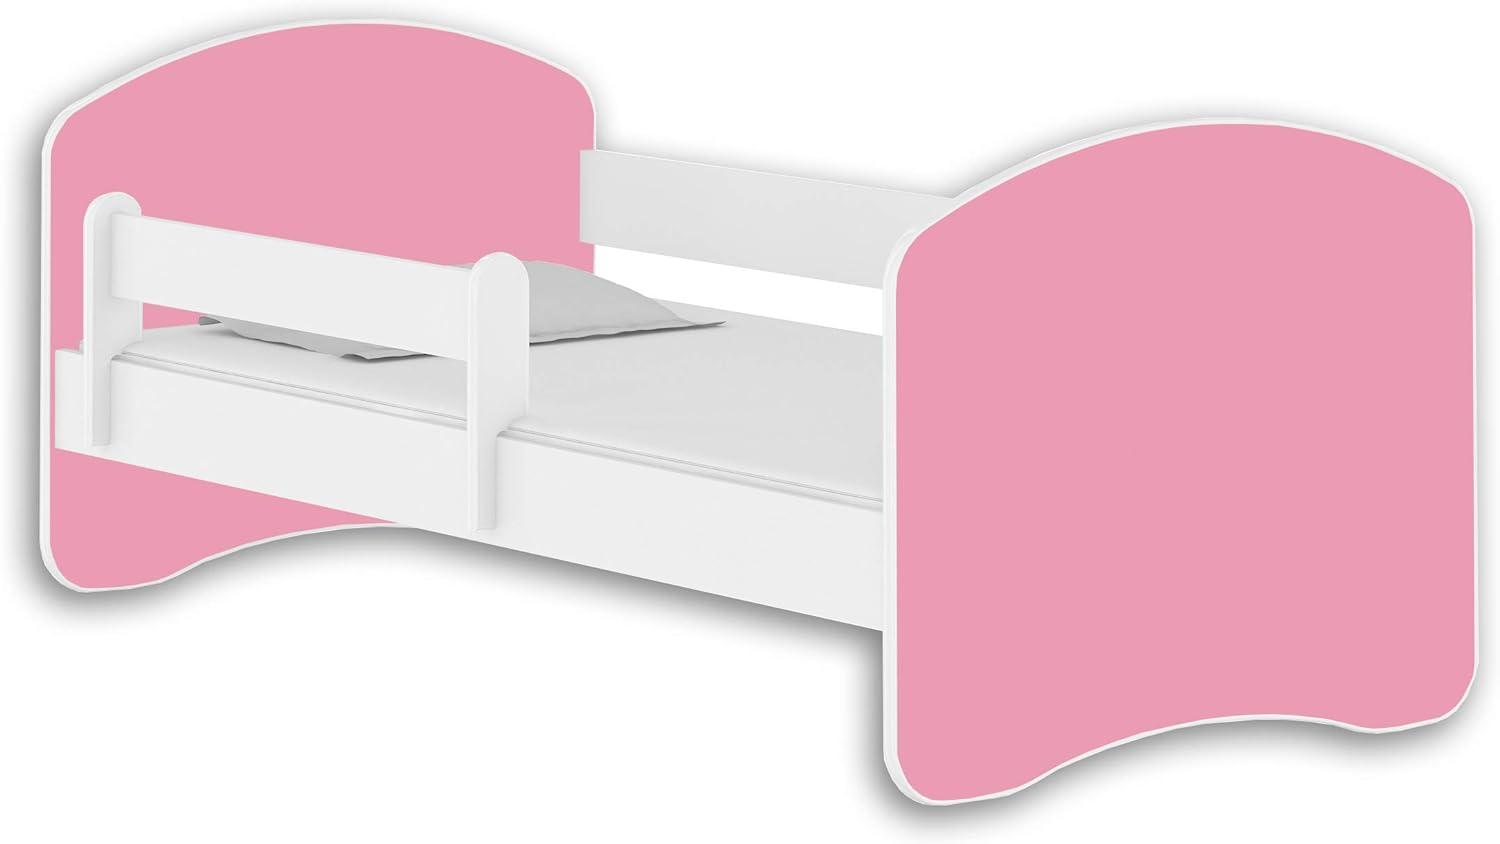 Jugendbett Kinderbett mit einer Schublade mit Rausfallschutz und Matratze Weiß ACMA II 140 160 180 (180x80 cm, Weiß - Rosa) Bild 1